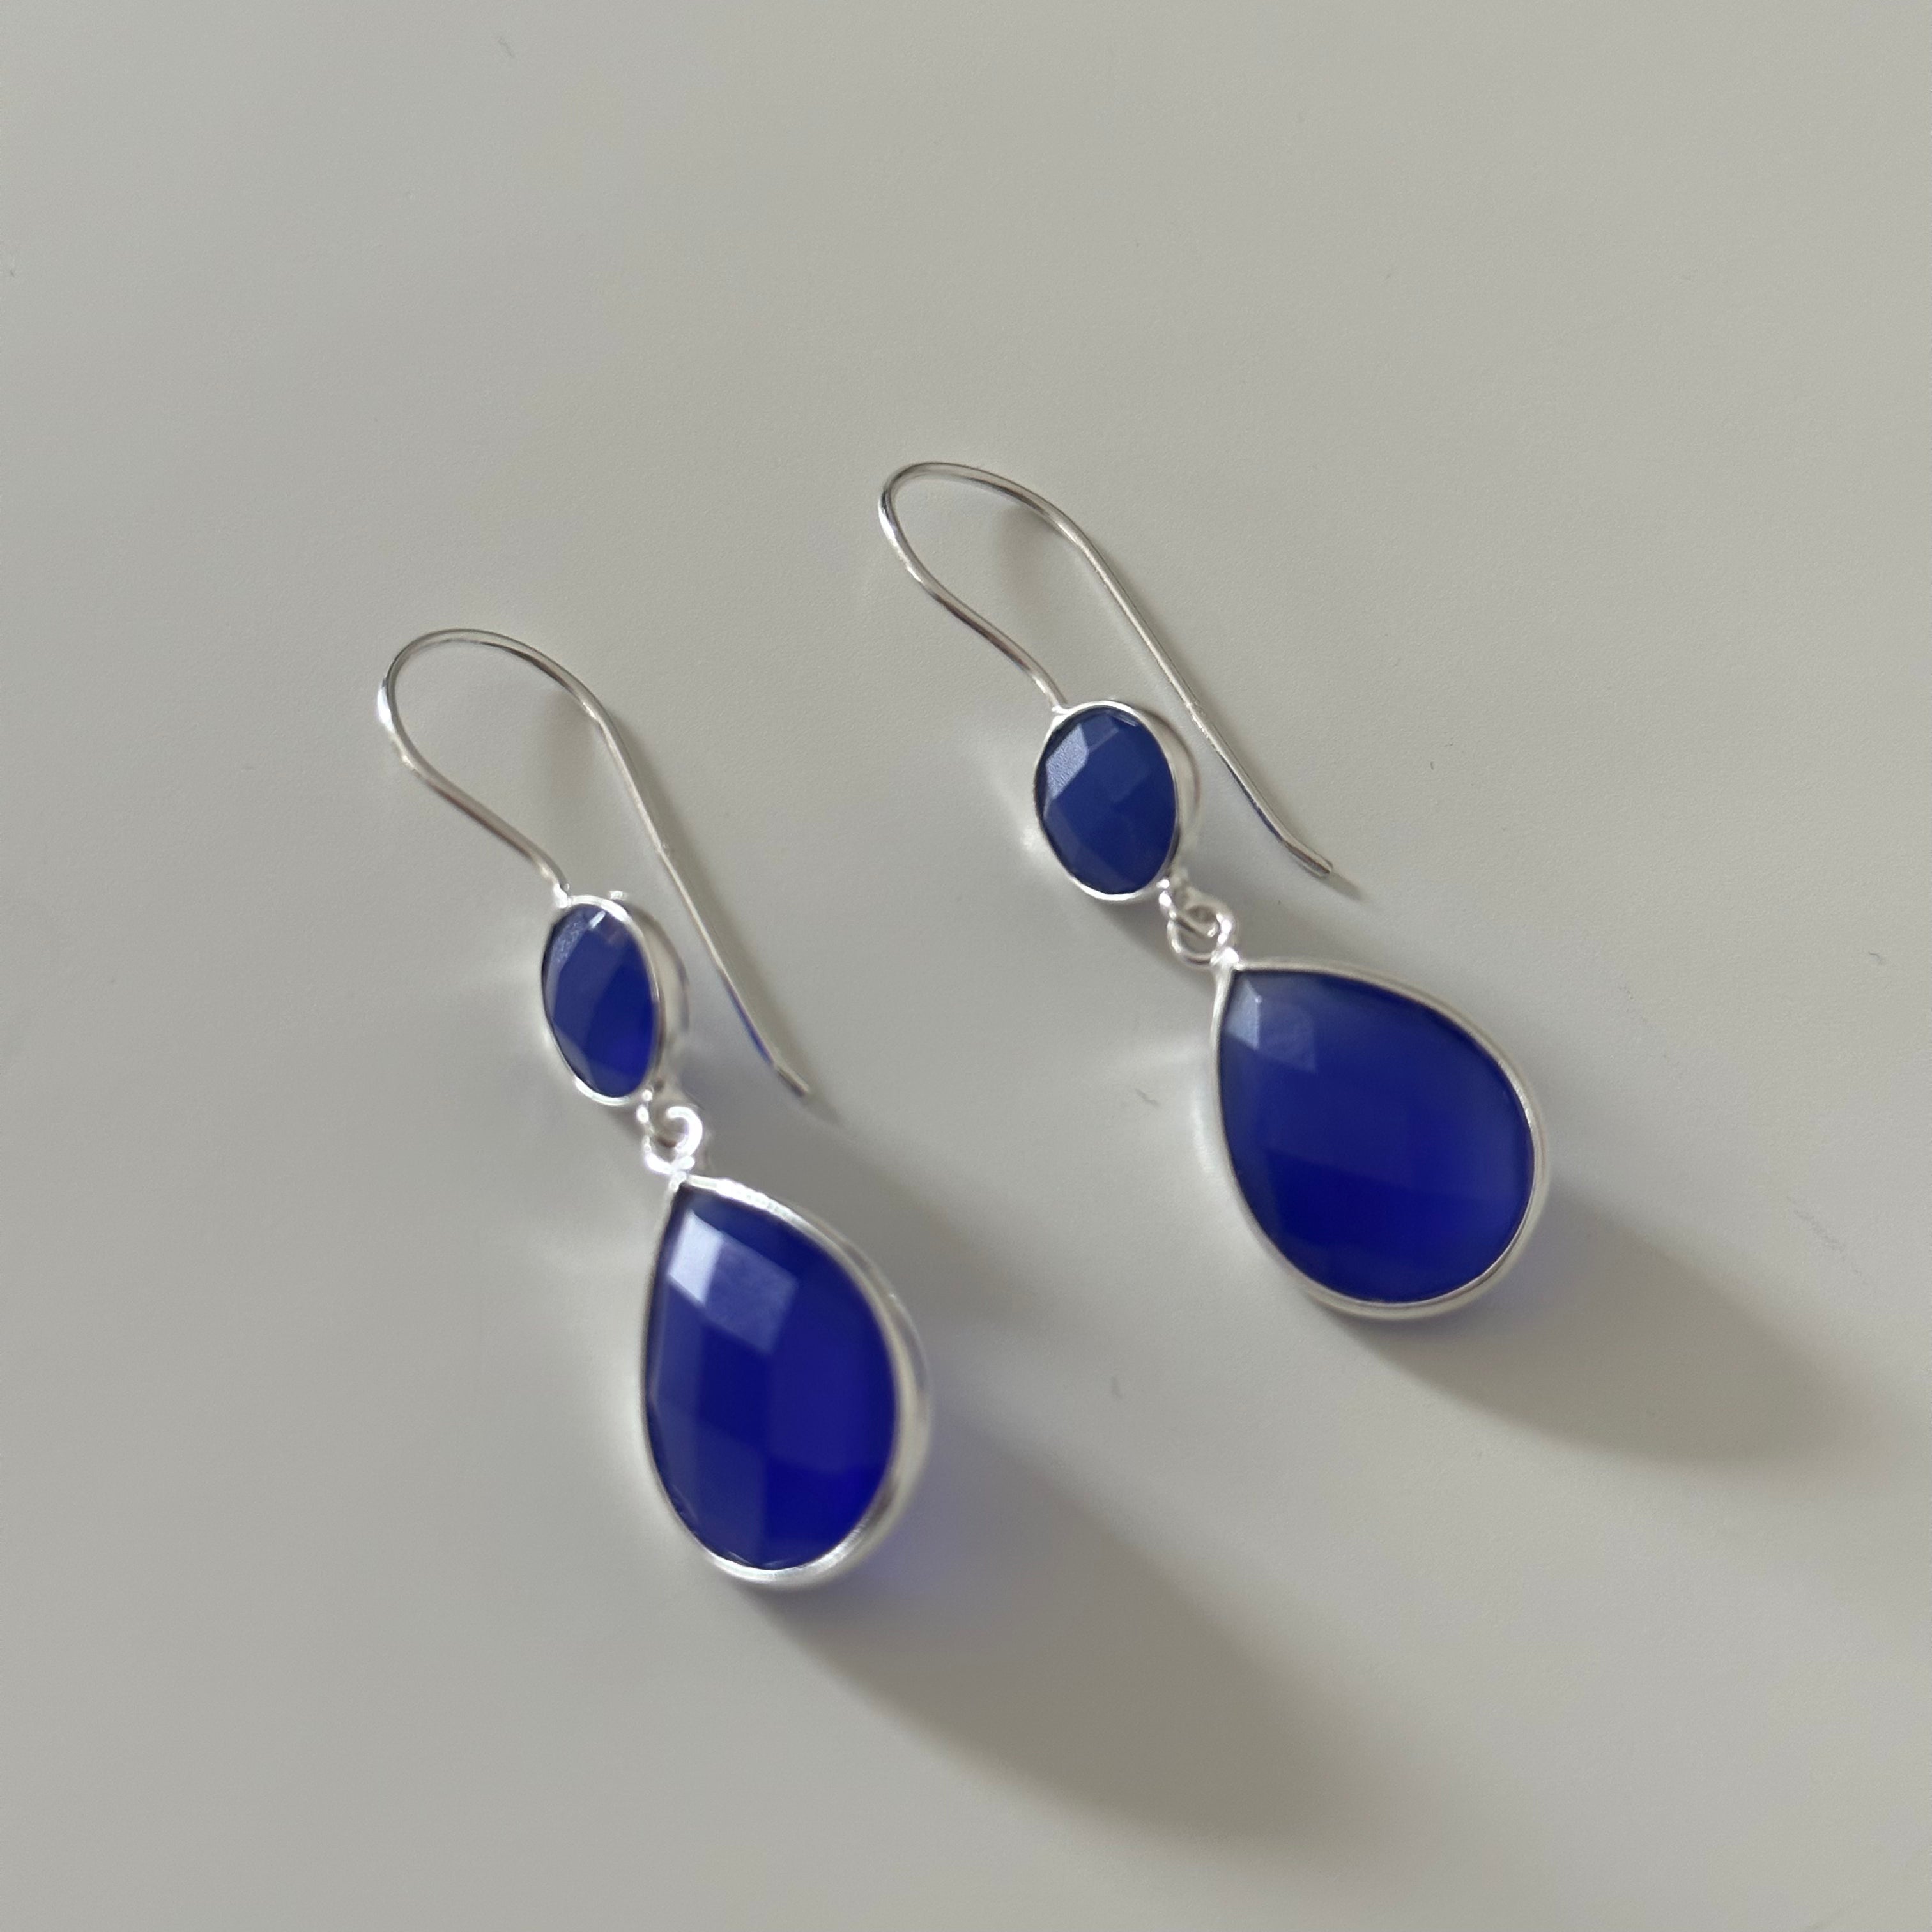 Blue Chalcedony Gemstone Two Stone Earrings in Sterling Silver - Teardrop